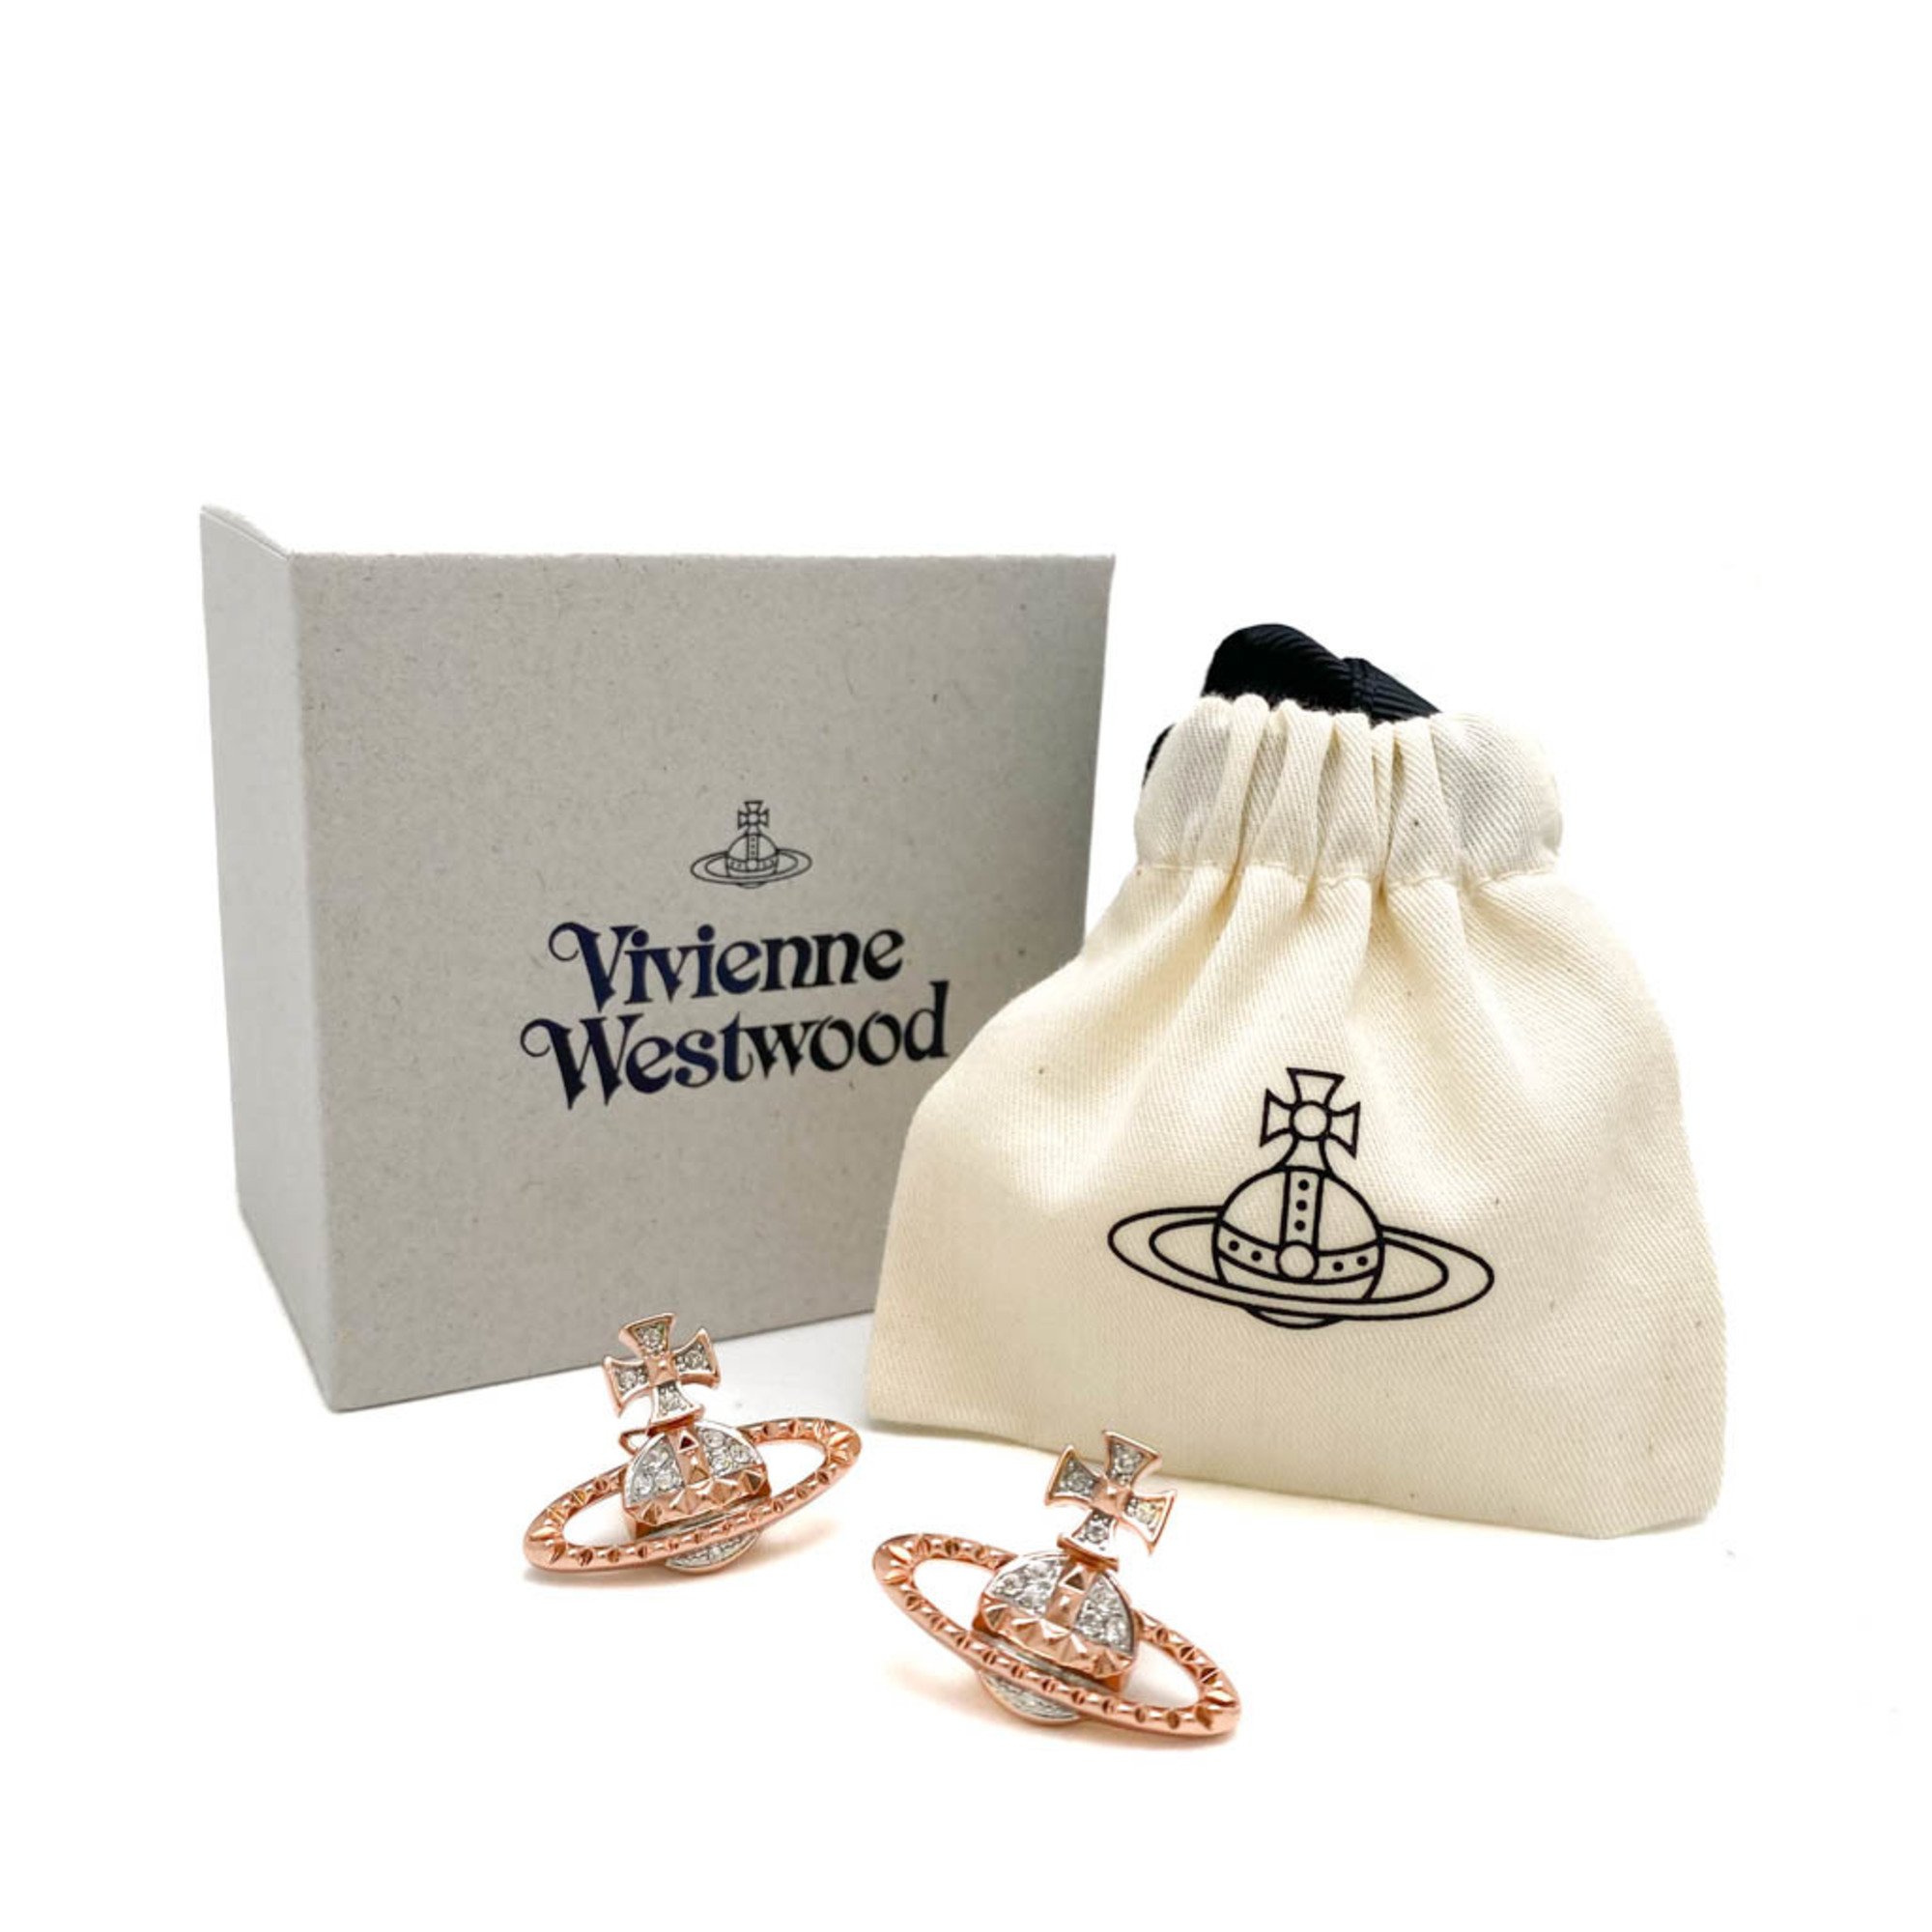 Vivienne Westwood Mayfair Bas Relief Rhinestone Metal Stud Earrings Pink Gold